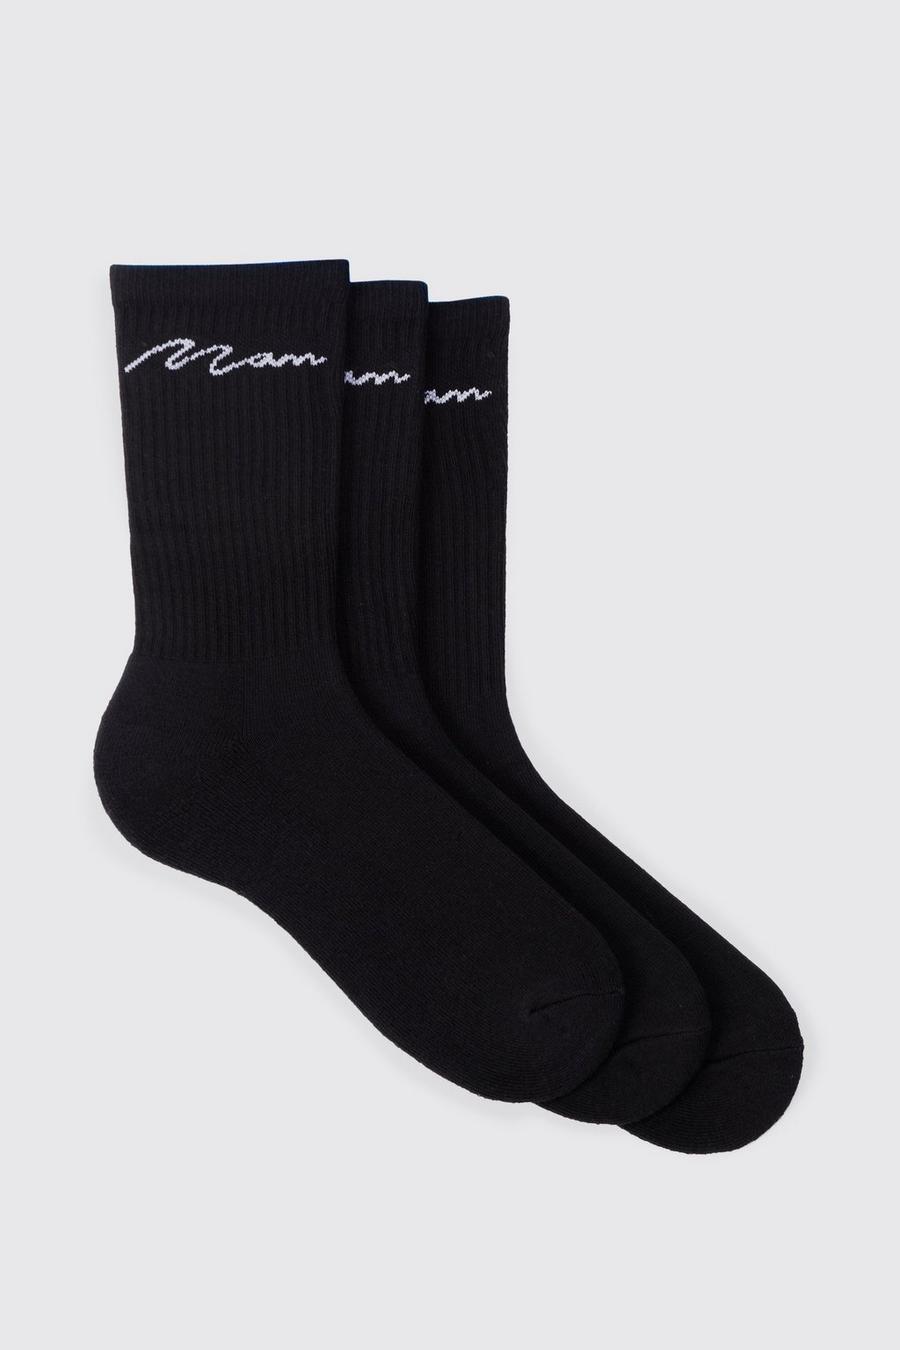 Lot de 3 paires de chaussettes - MAN, Black